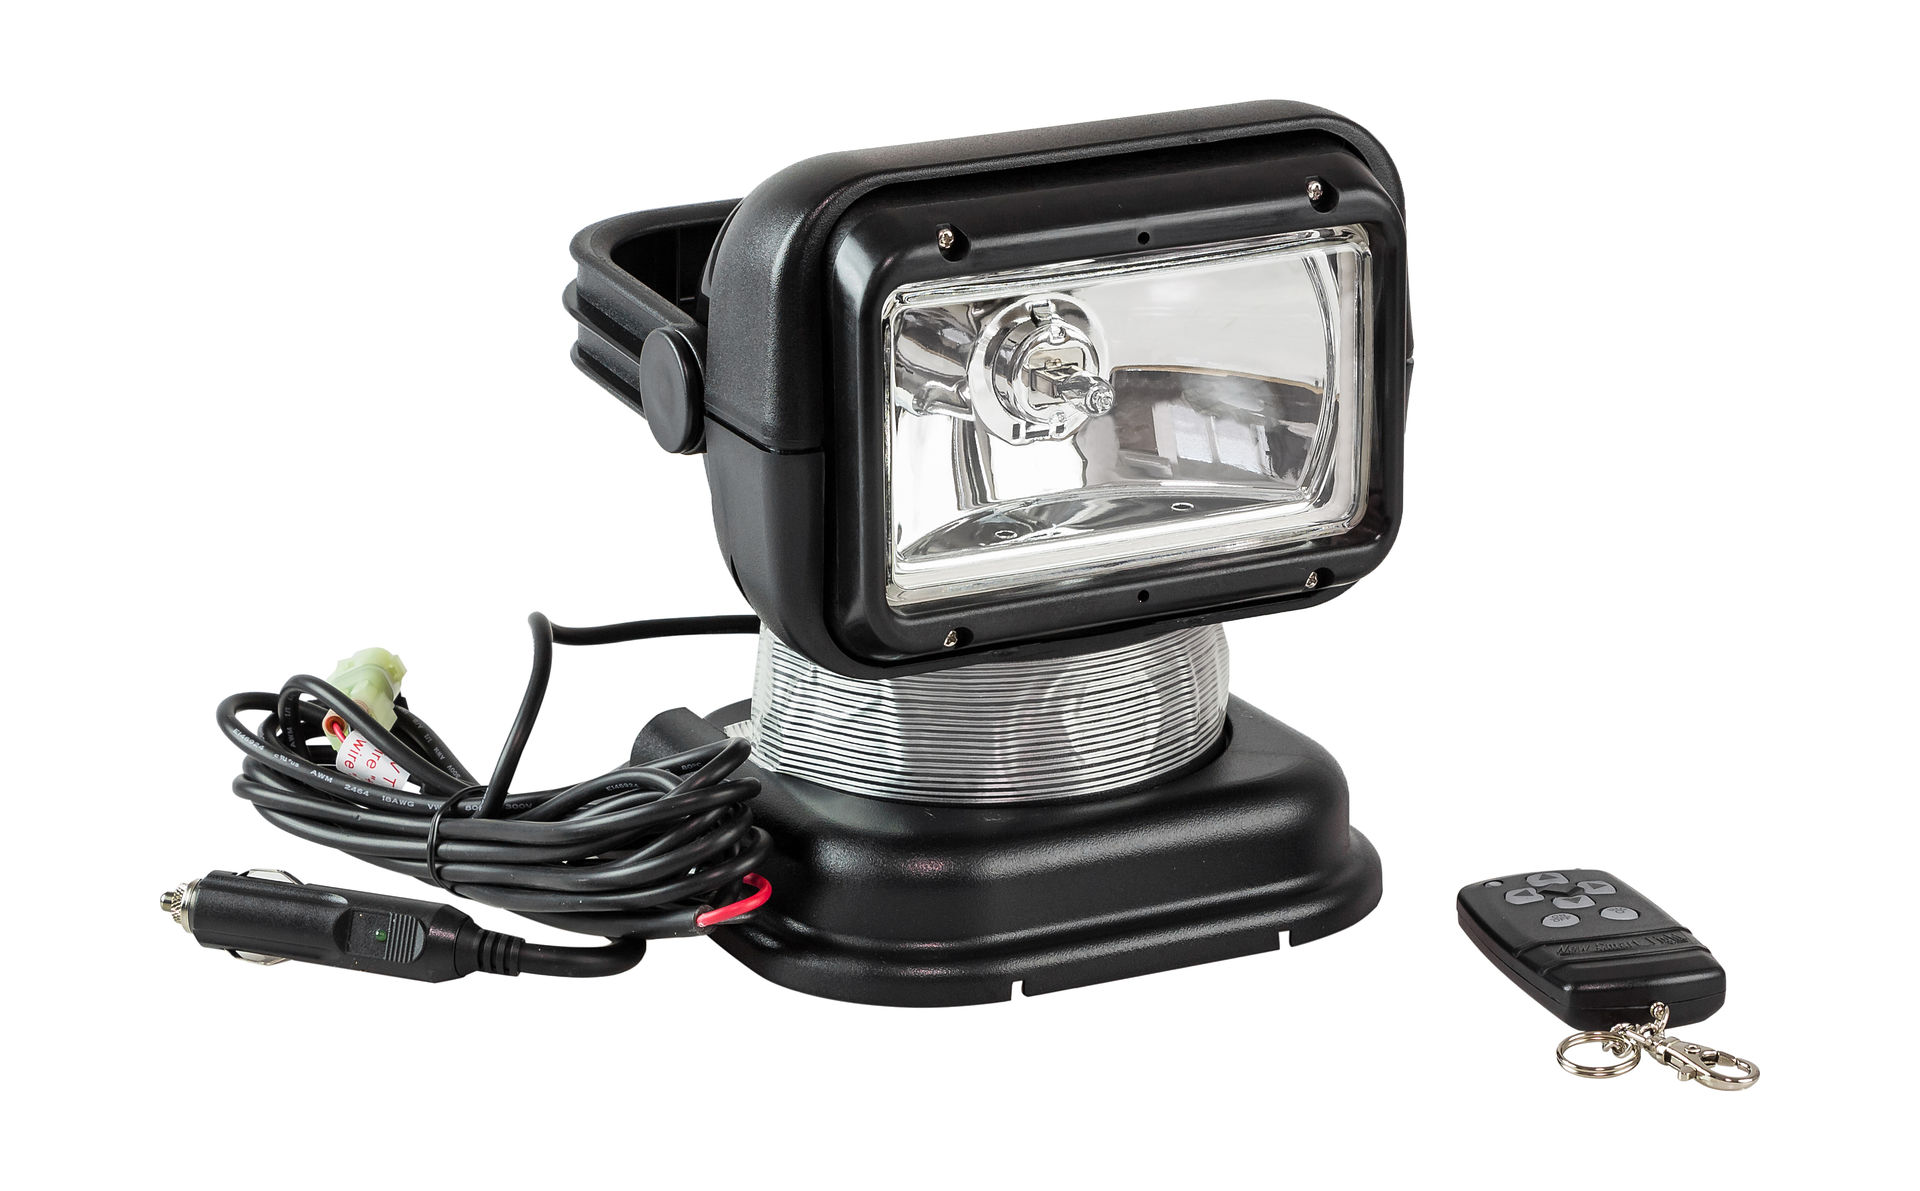 Прожектор с дистанционным управлением, черный корпус, галоген, брелок, модель 950 Allremote SL001ABSD